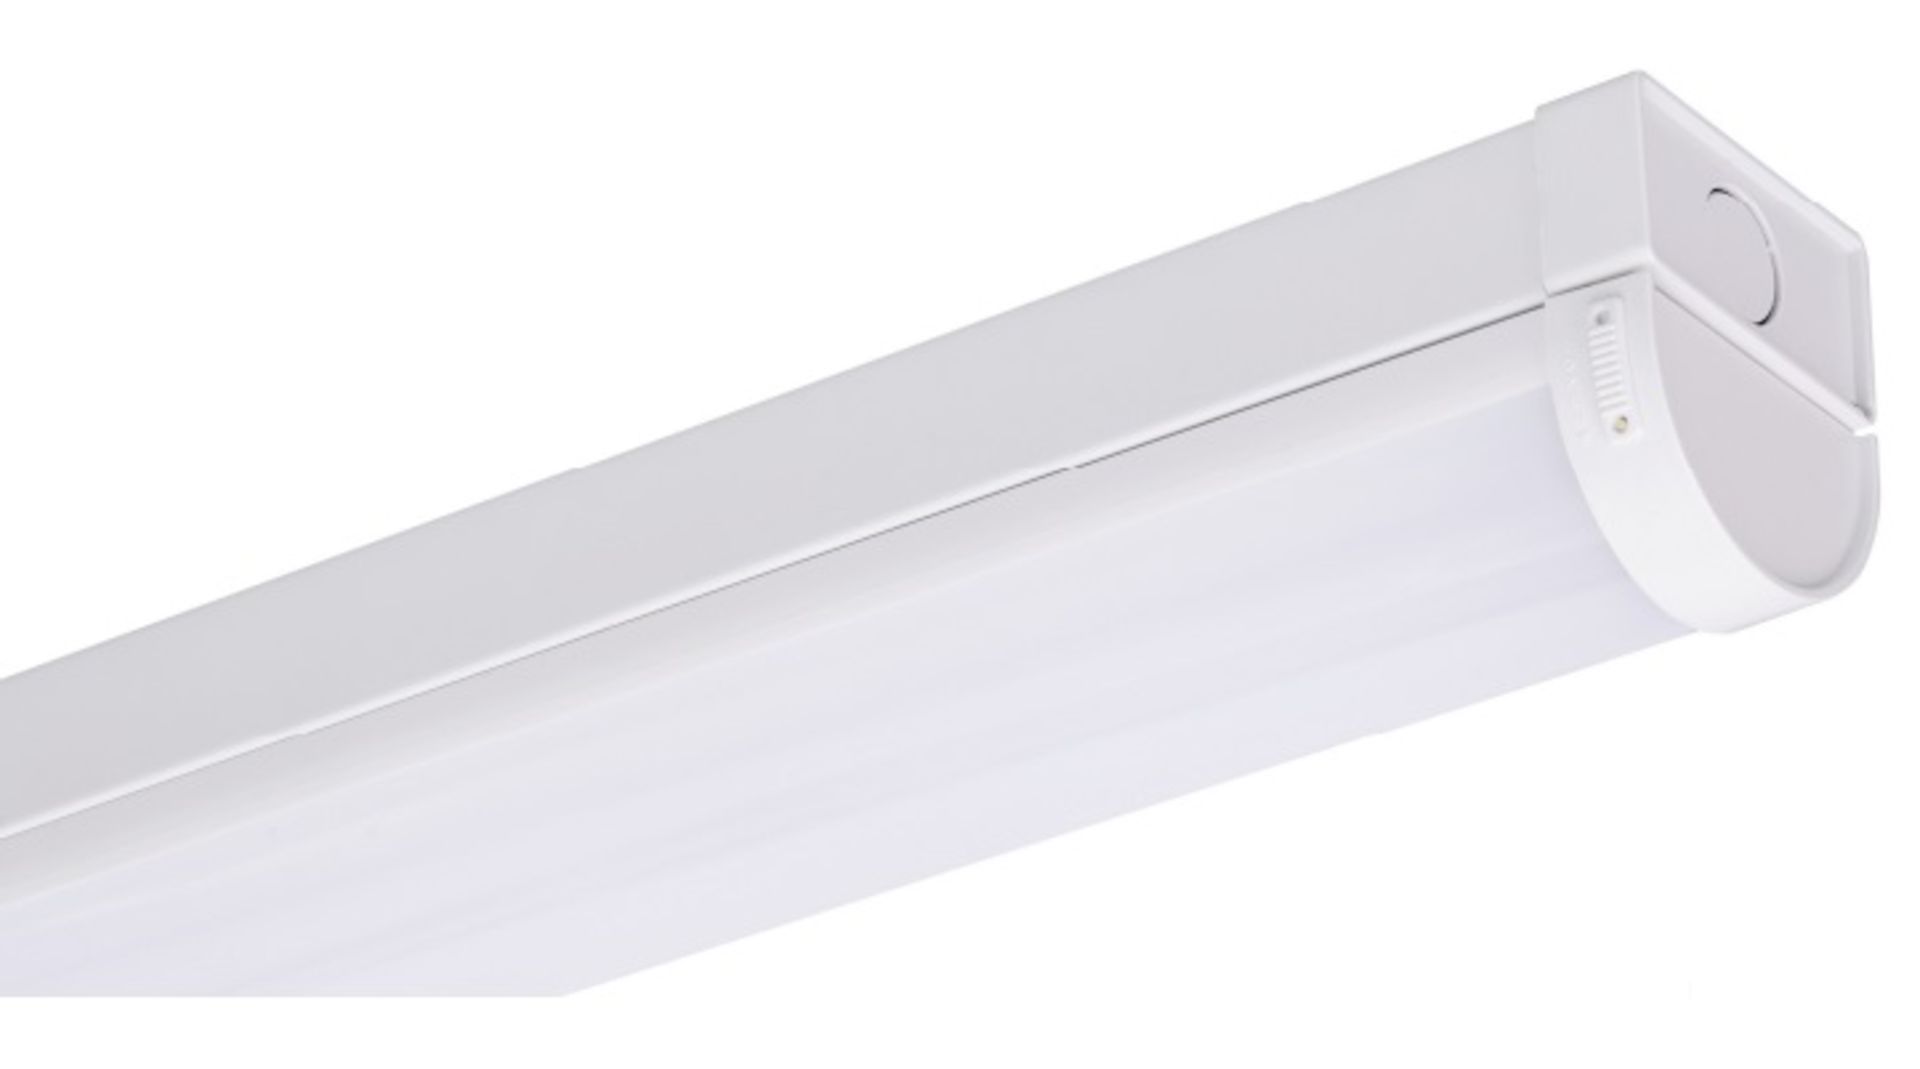 100 x Saber 5ft Single Batten LED Lights | SSA30/840 | Total Cost £1,340